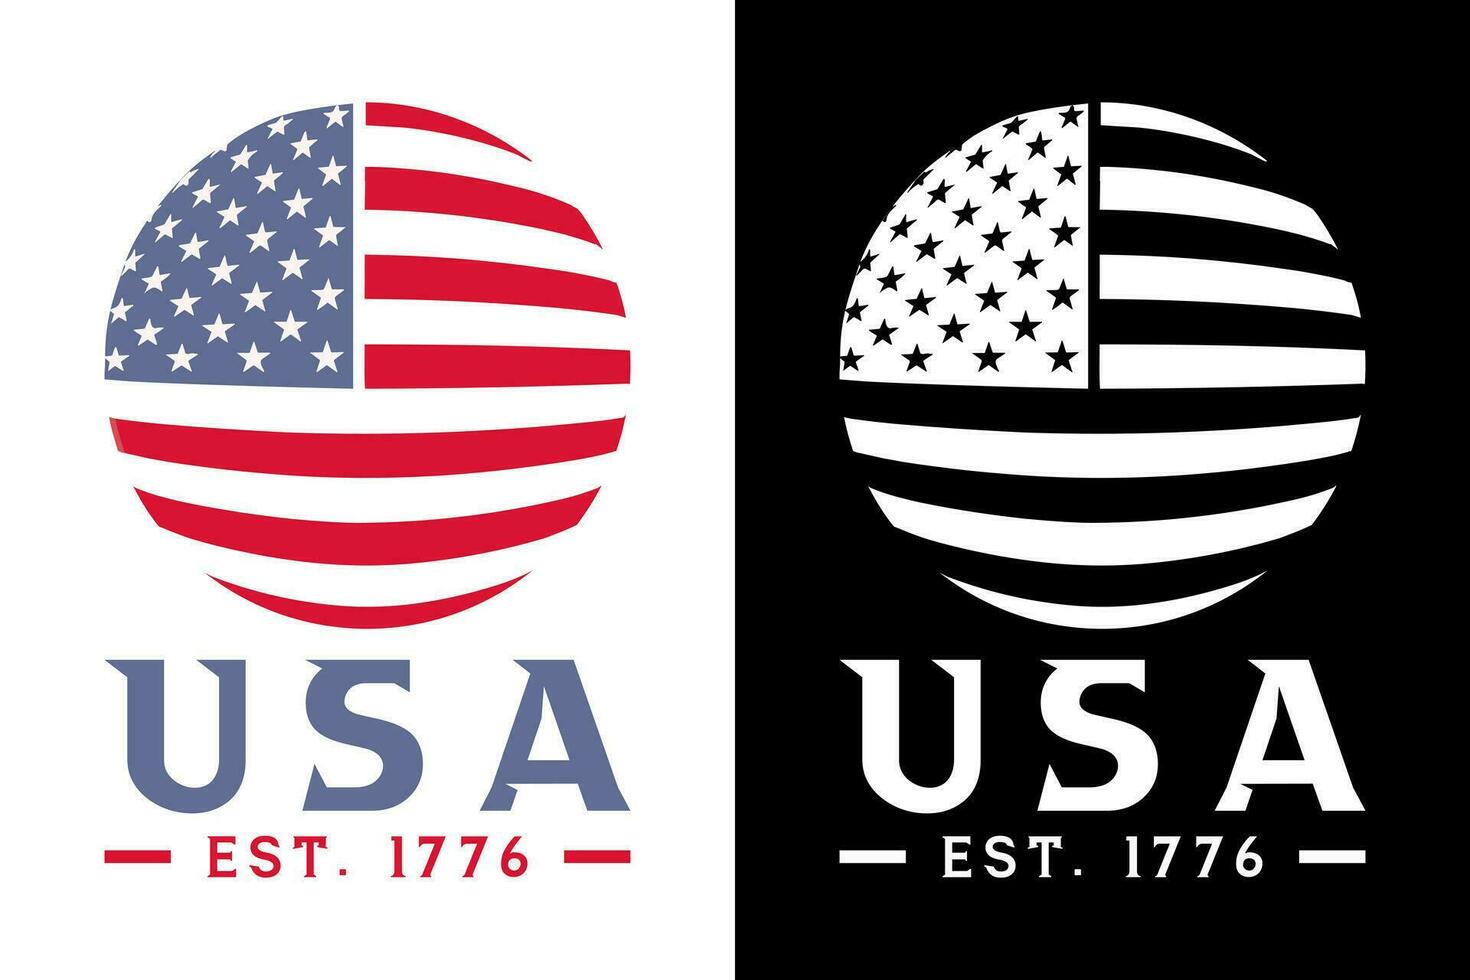 vereinigt Zustände von Amerika Europäische Sommerzeit. 1776 und Flagge, USA Flagge Silhouette, USA Flagge im Erde gestalten Vektor Illustration